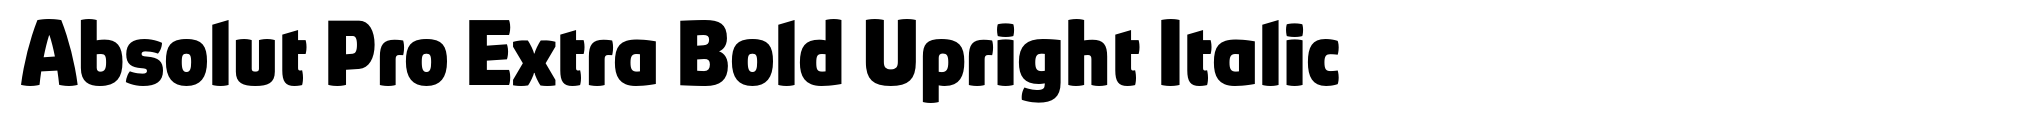 Absolut Pro Extra Bold Upright Italic image